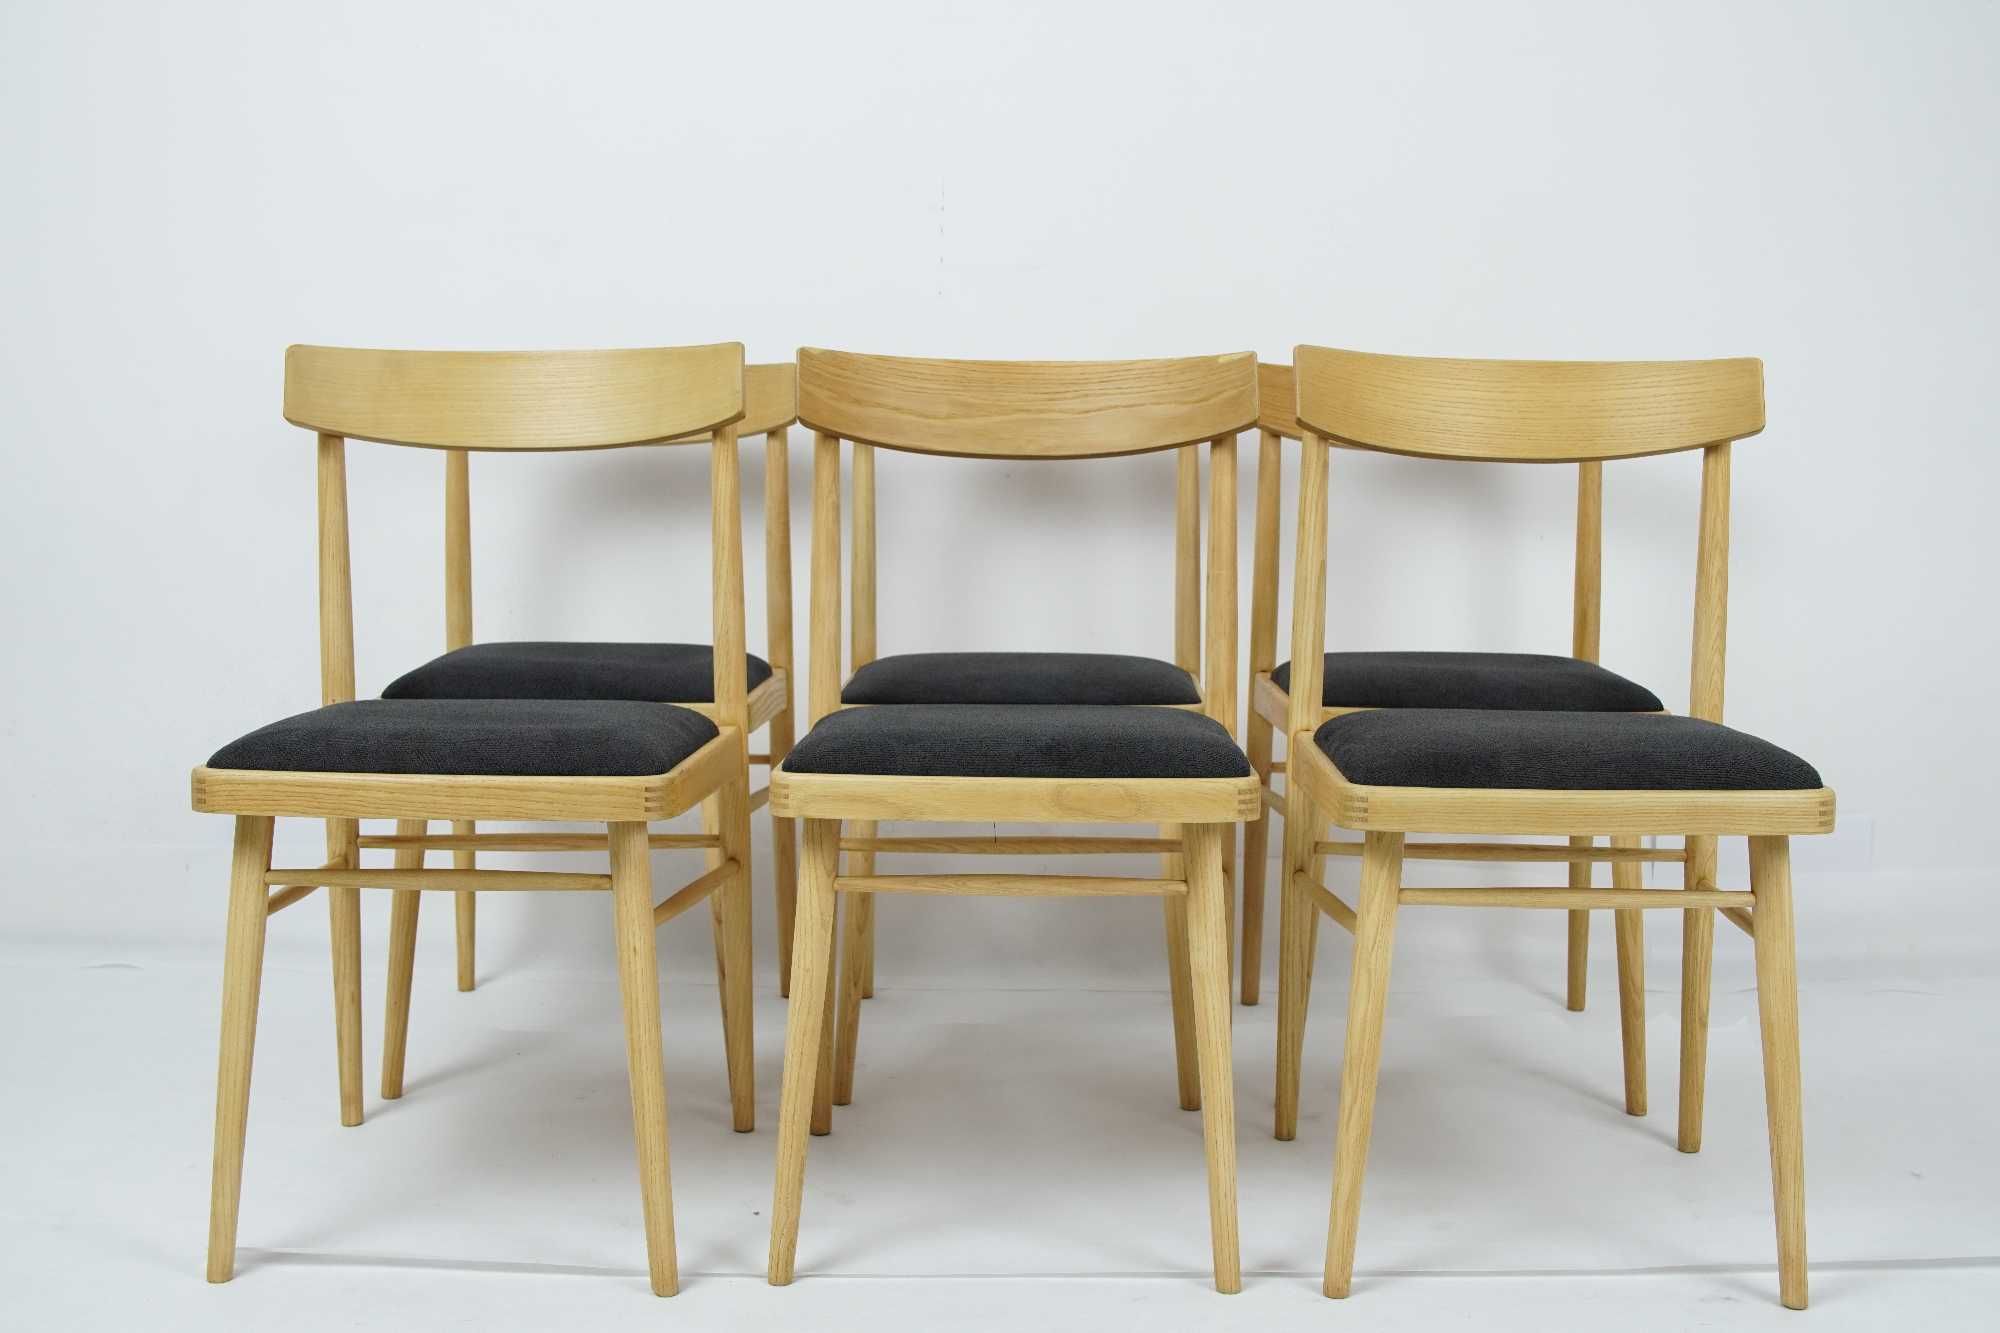 Komplet jesionowych krzeseł TON, Czechosłowacja lata 60